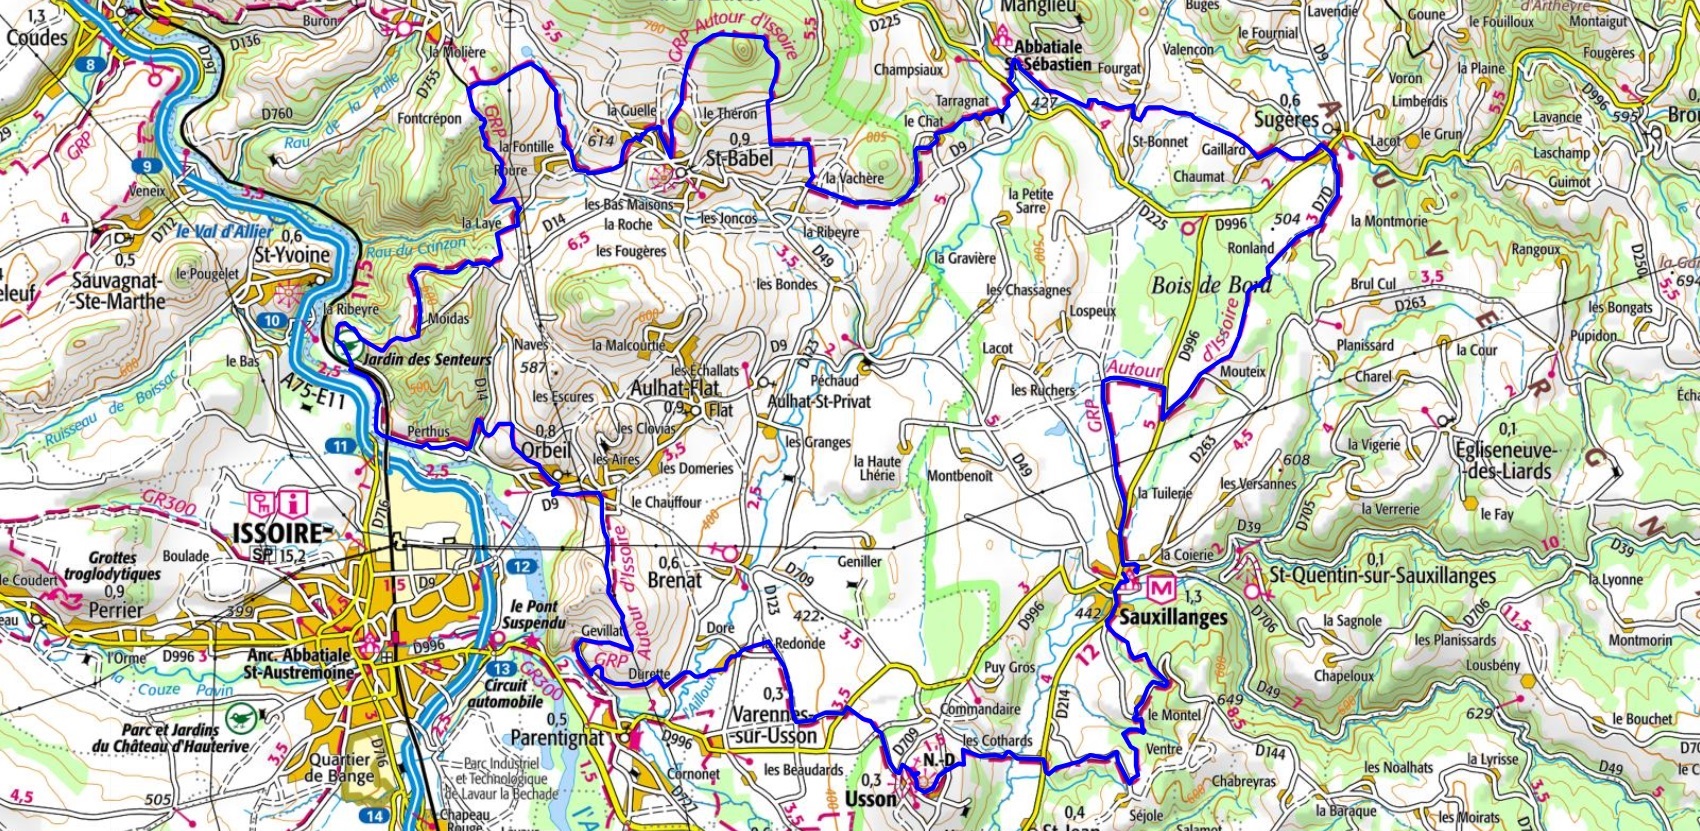 Hiking Loop of Queen Margot (Puy-de-Dome) 1